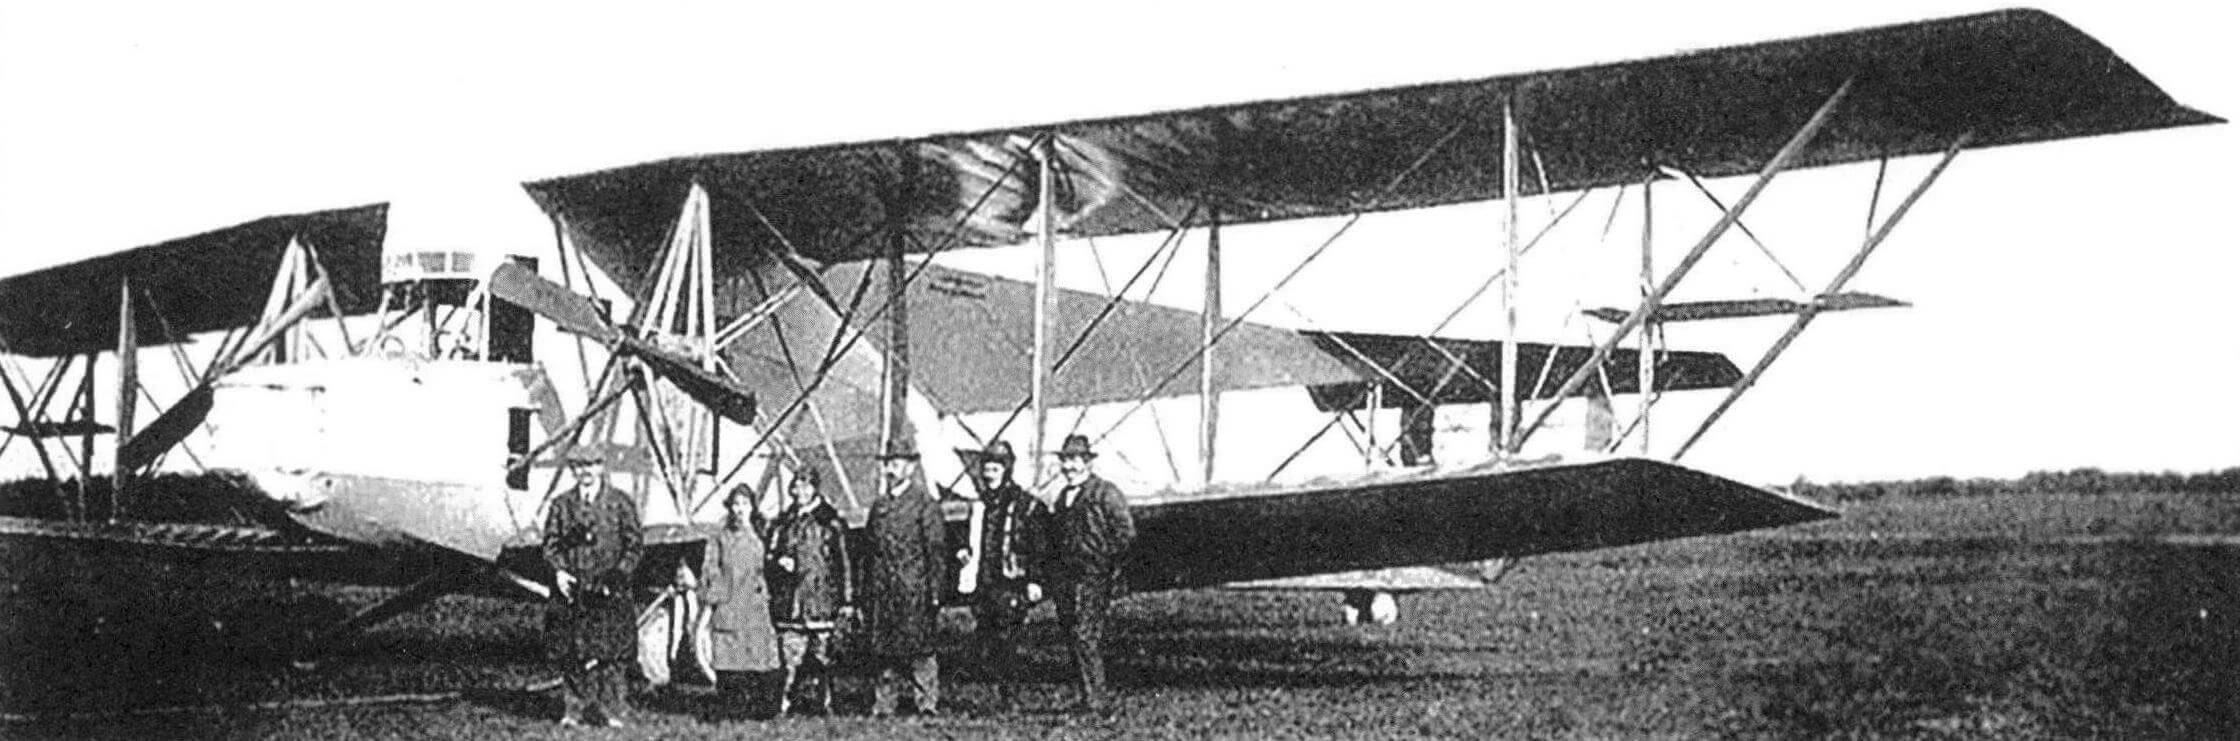 SSWR.I после первого вылета в Ноймюнстере, май 1915 года. Слева направо: Карл Фридрих фон Сименс, Франц Штеффен и его жена, доктор Вальтер Райхель, Бруно Штеффен и инженер Динслаге